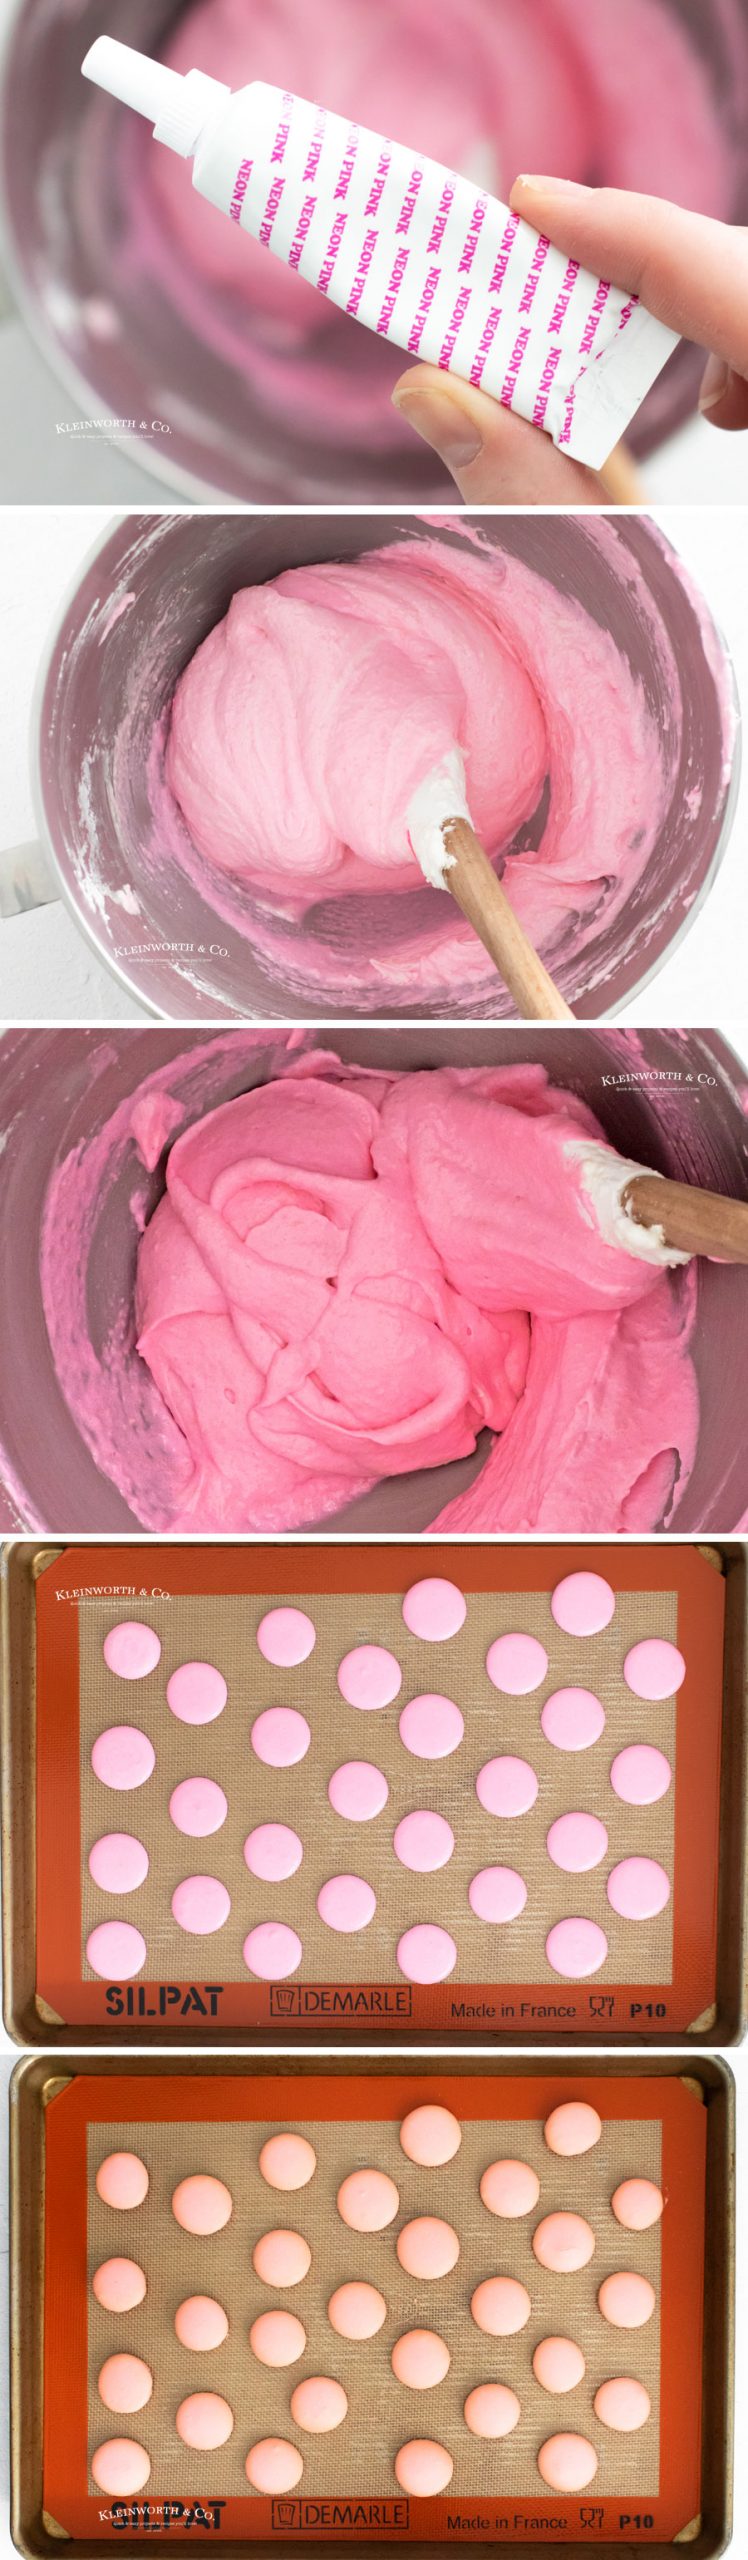 baking pink Strawberry Macaron cookies